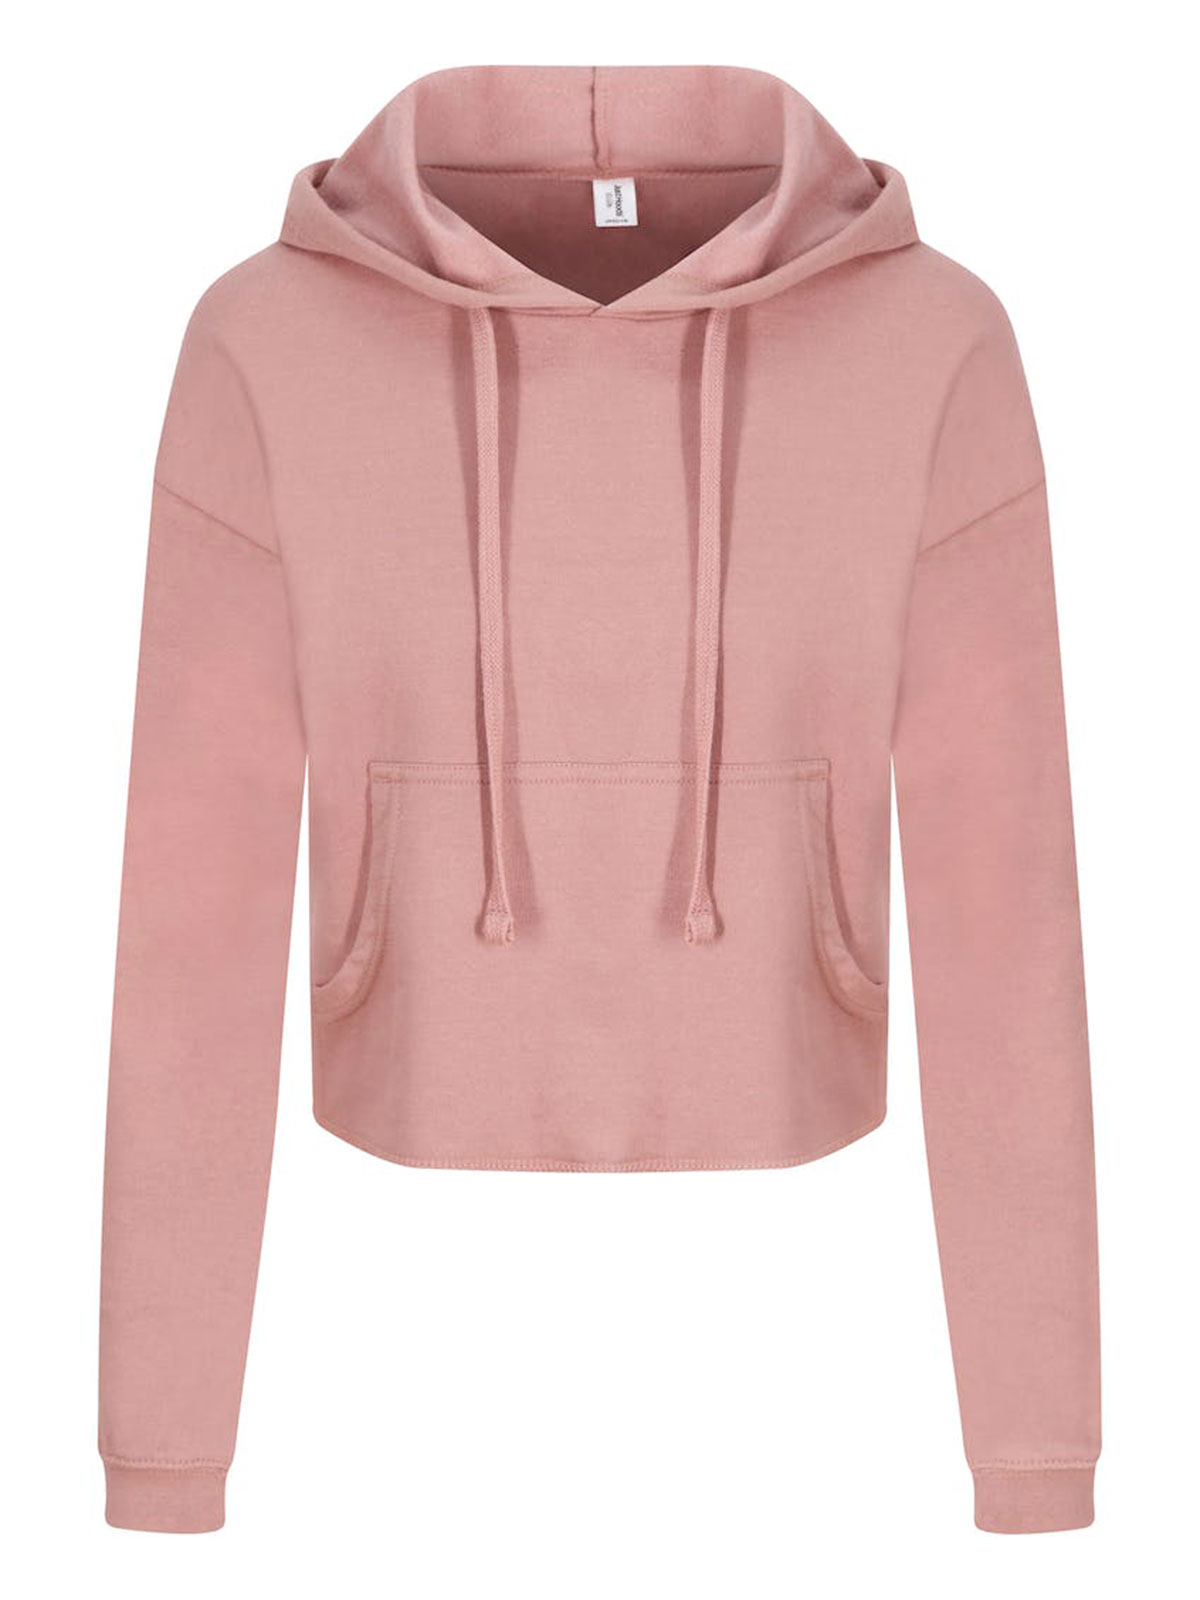 girlie-cropped-hoodie-dusty-pink.webp